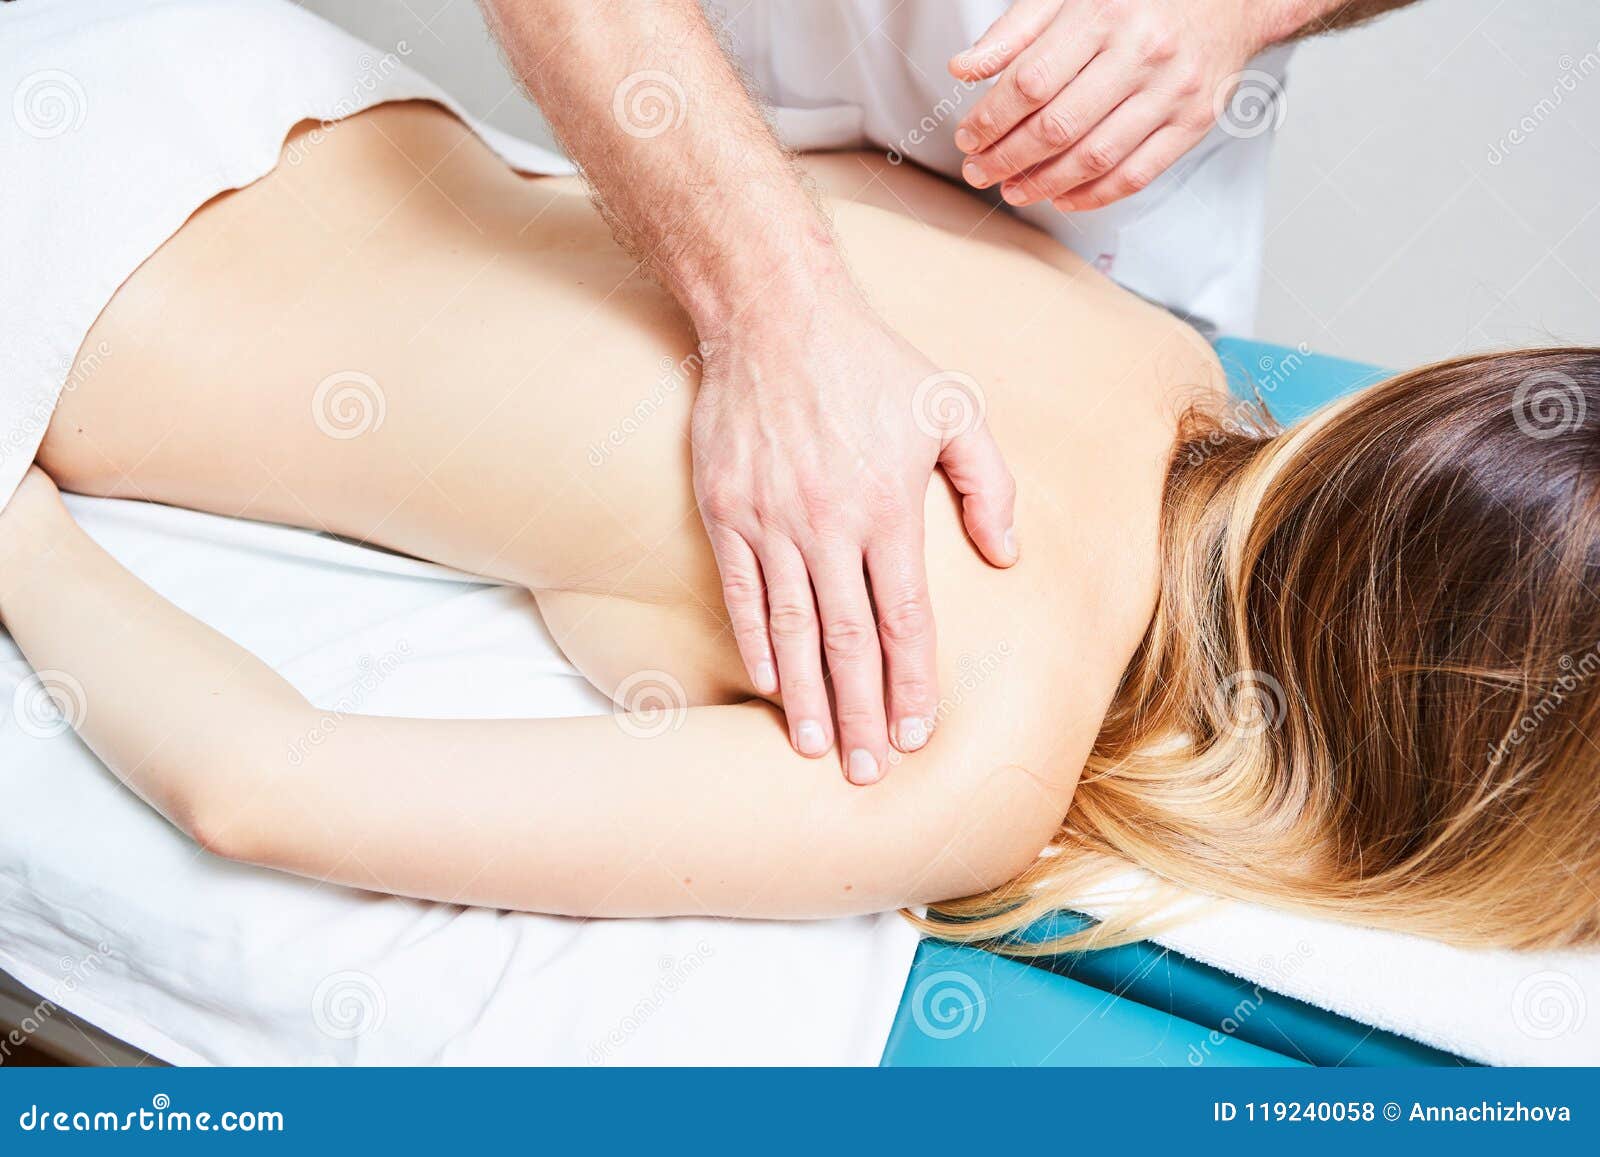 4 Hand Sensual Massage How Much Is A Nuru Massage